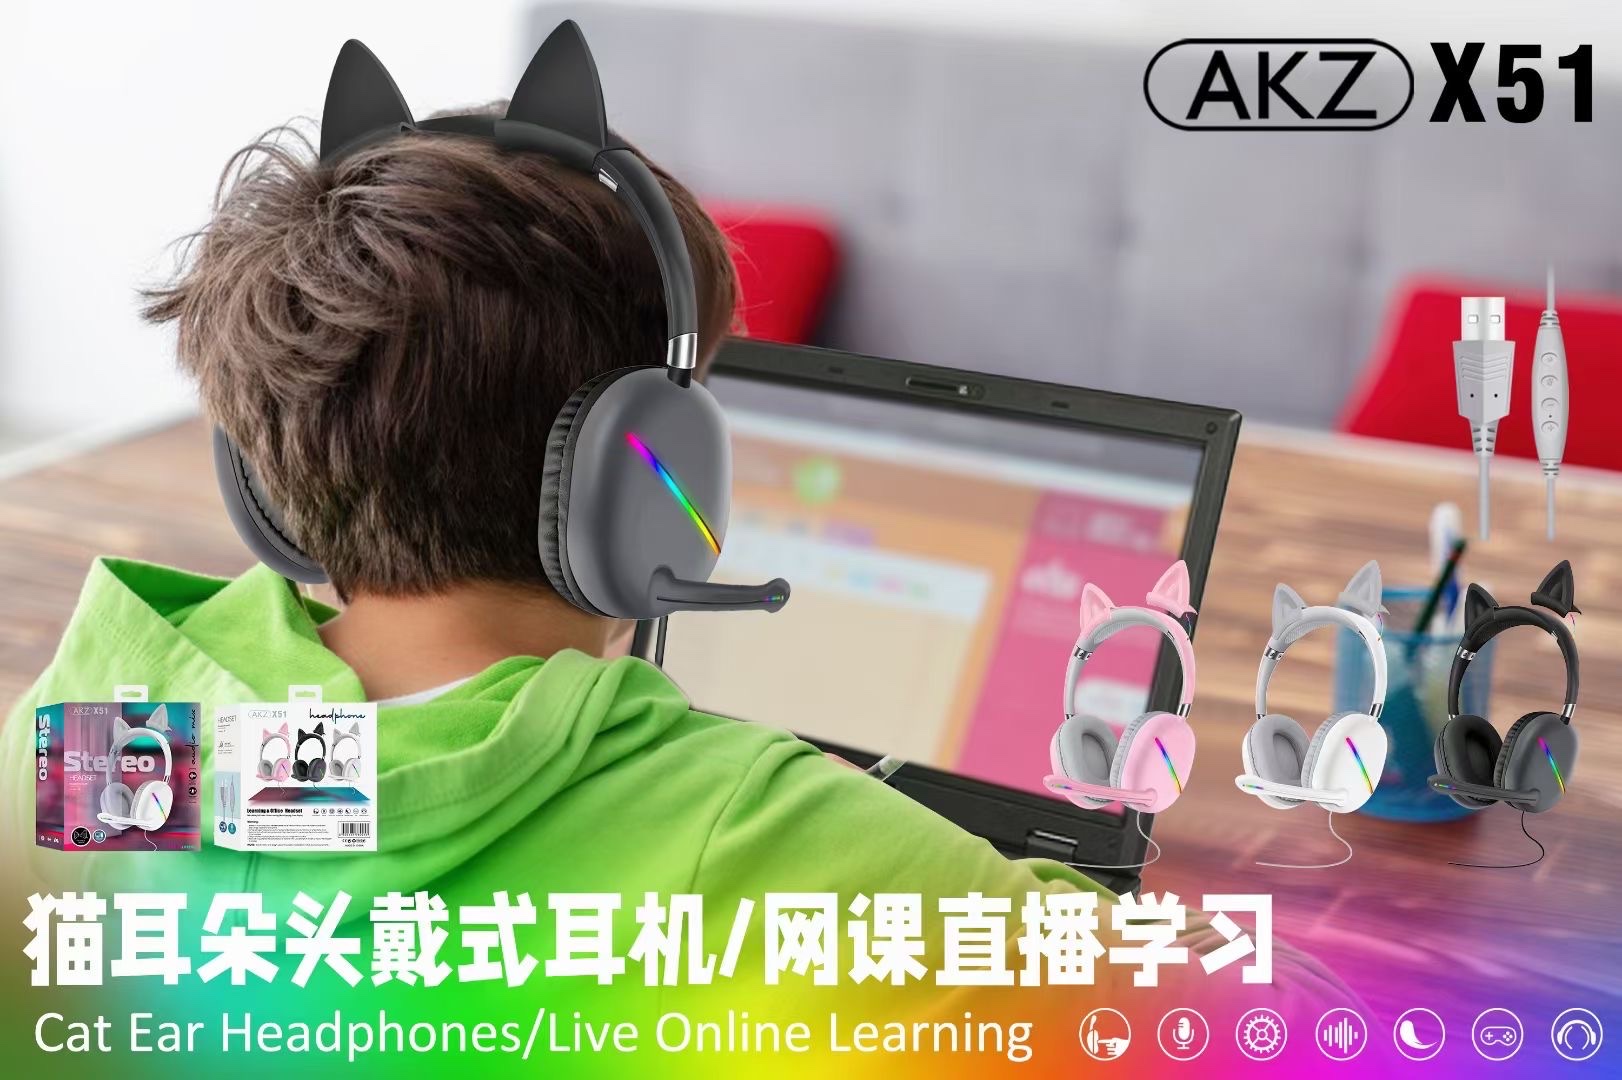 新款AKZ-X51有线游戏耳机猫耳机可拆缷猫耳RGB灯炫彩发光带线耳麦带声卡功能详情图1